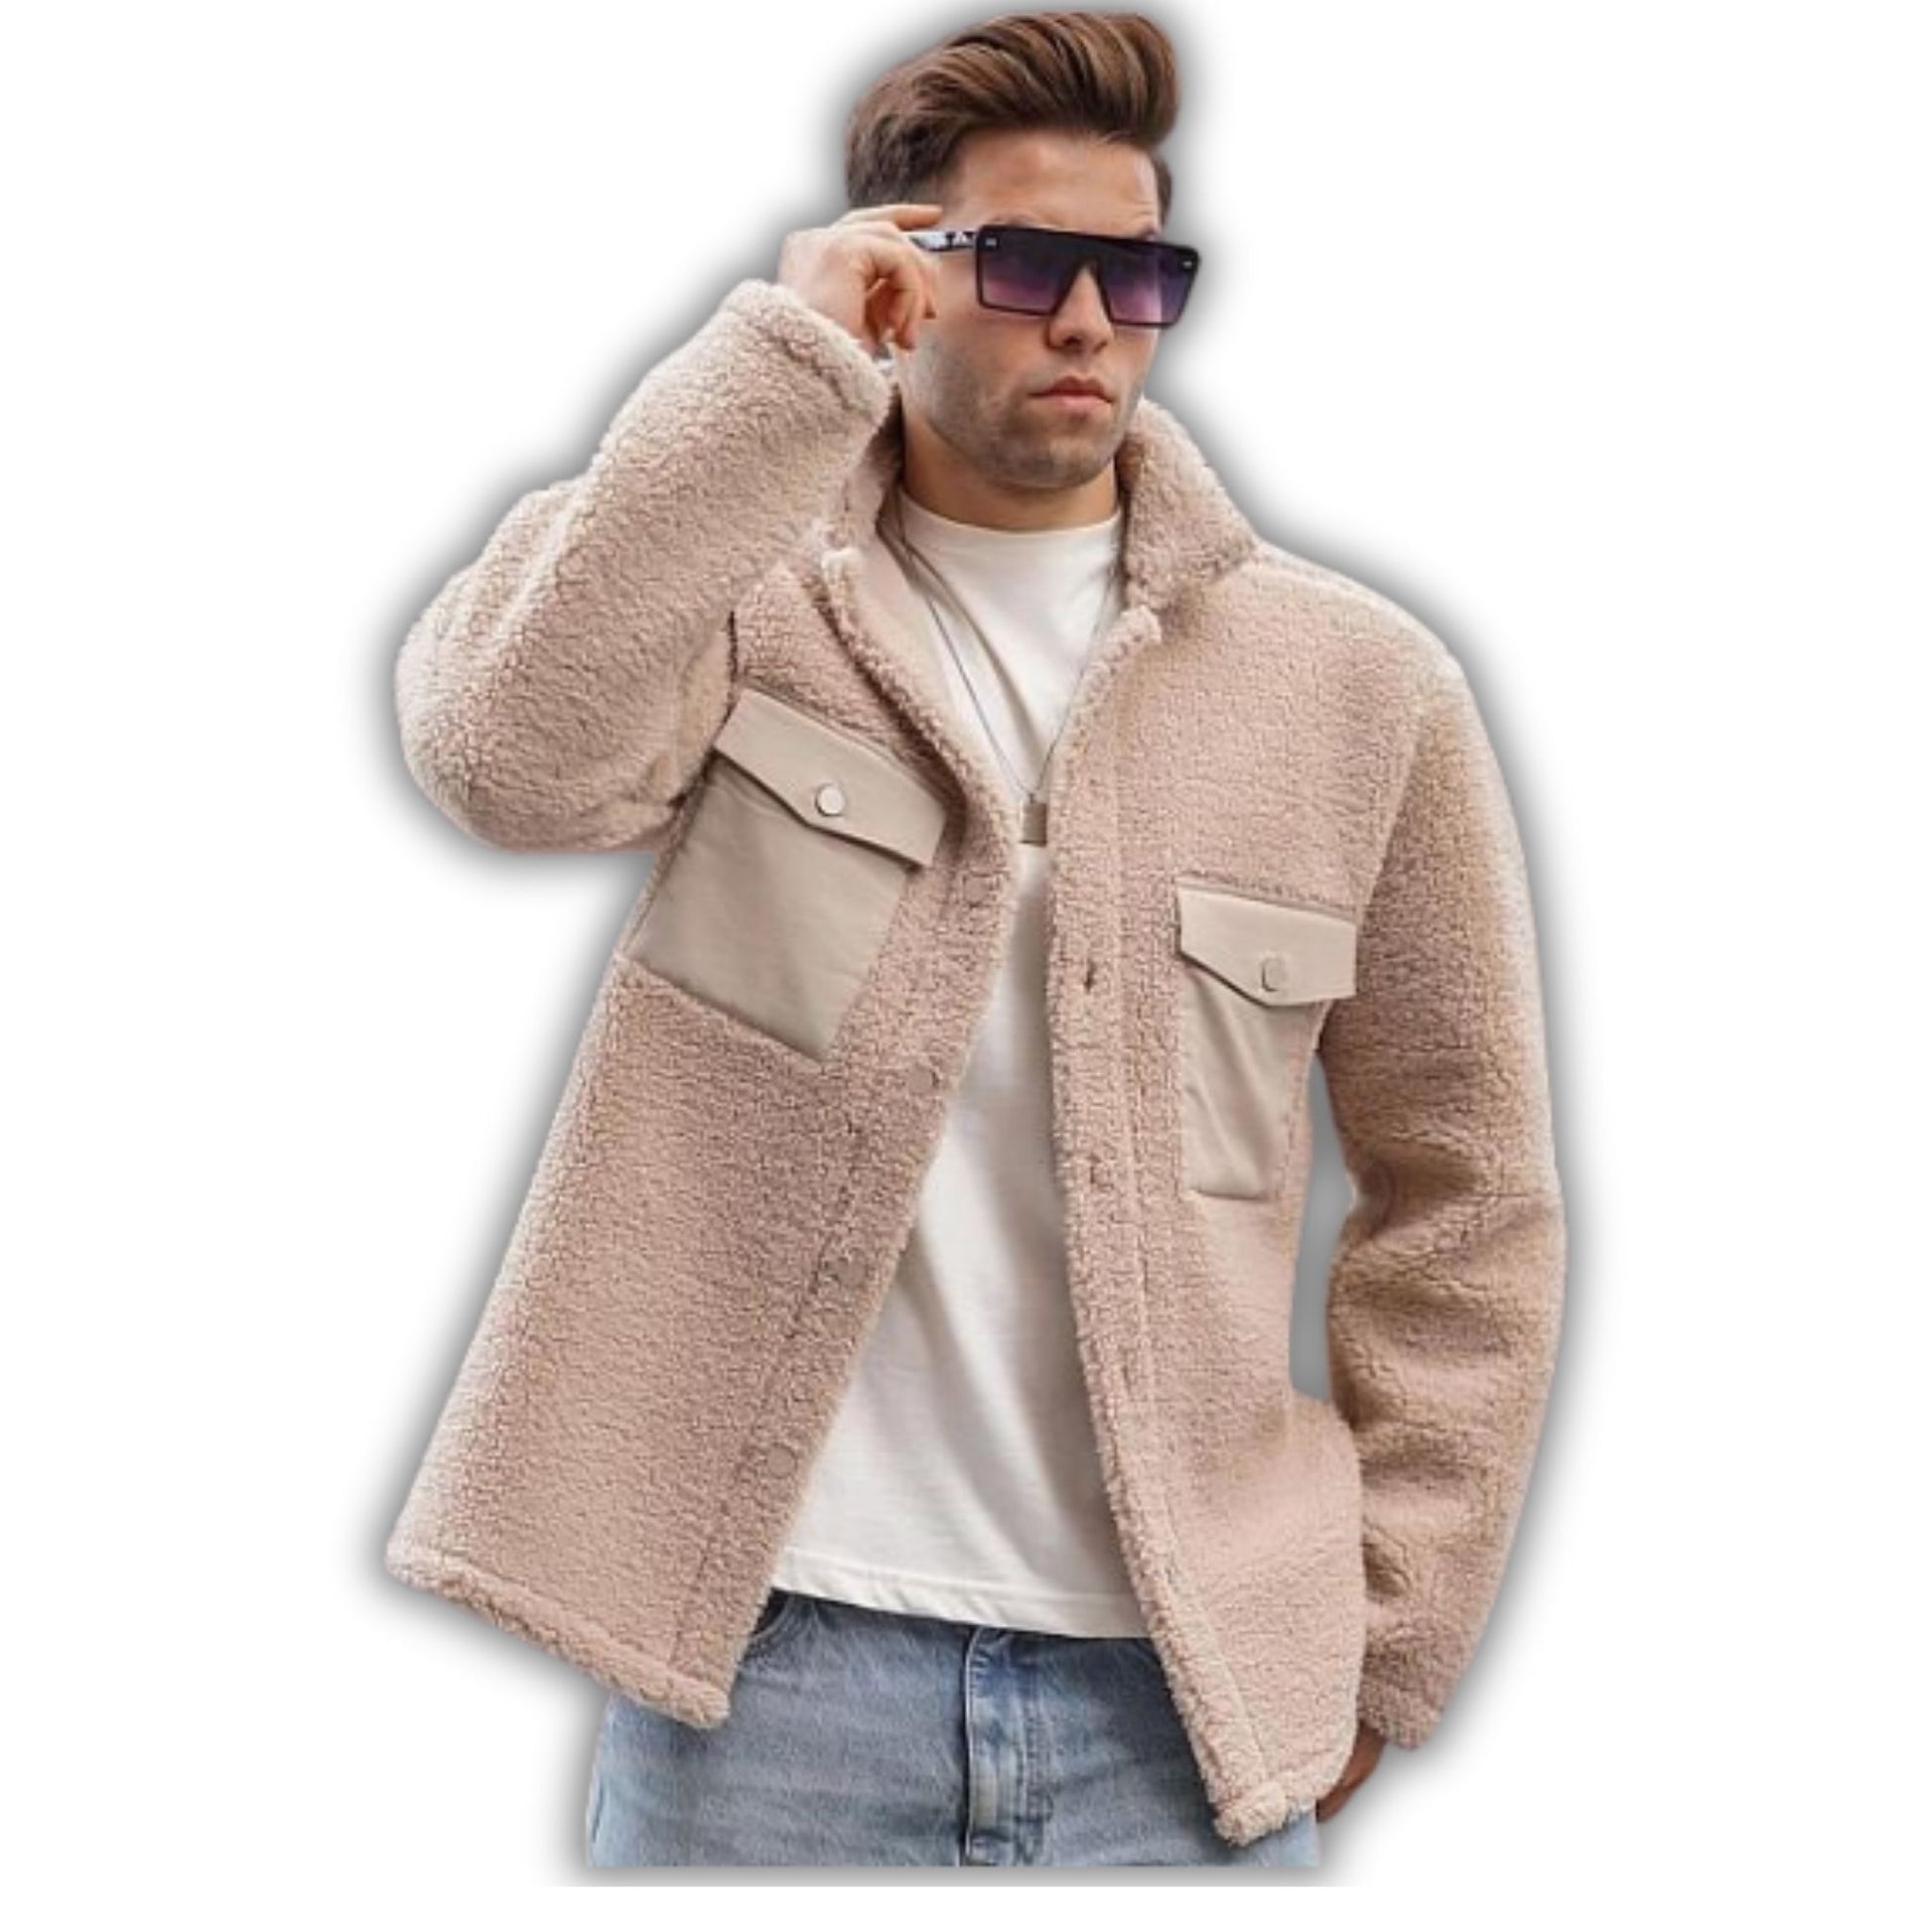 Stay Warm in Style: SHERPA MAX Jacket by KCT Menswear – KCTMenswear